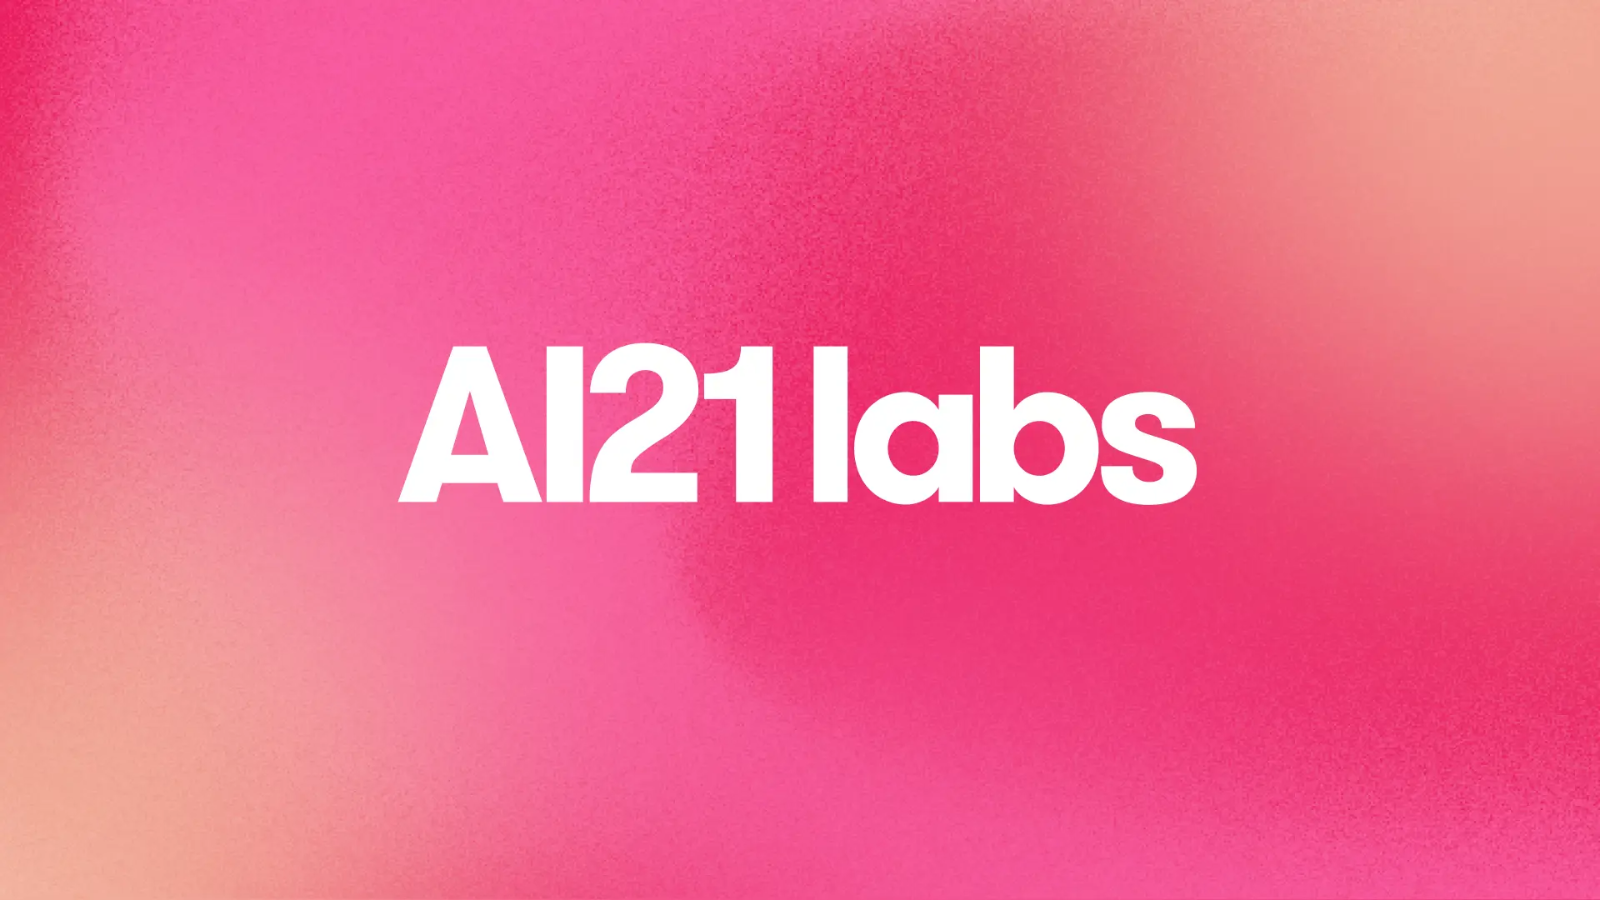 AI21labs Logo